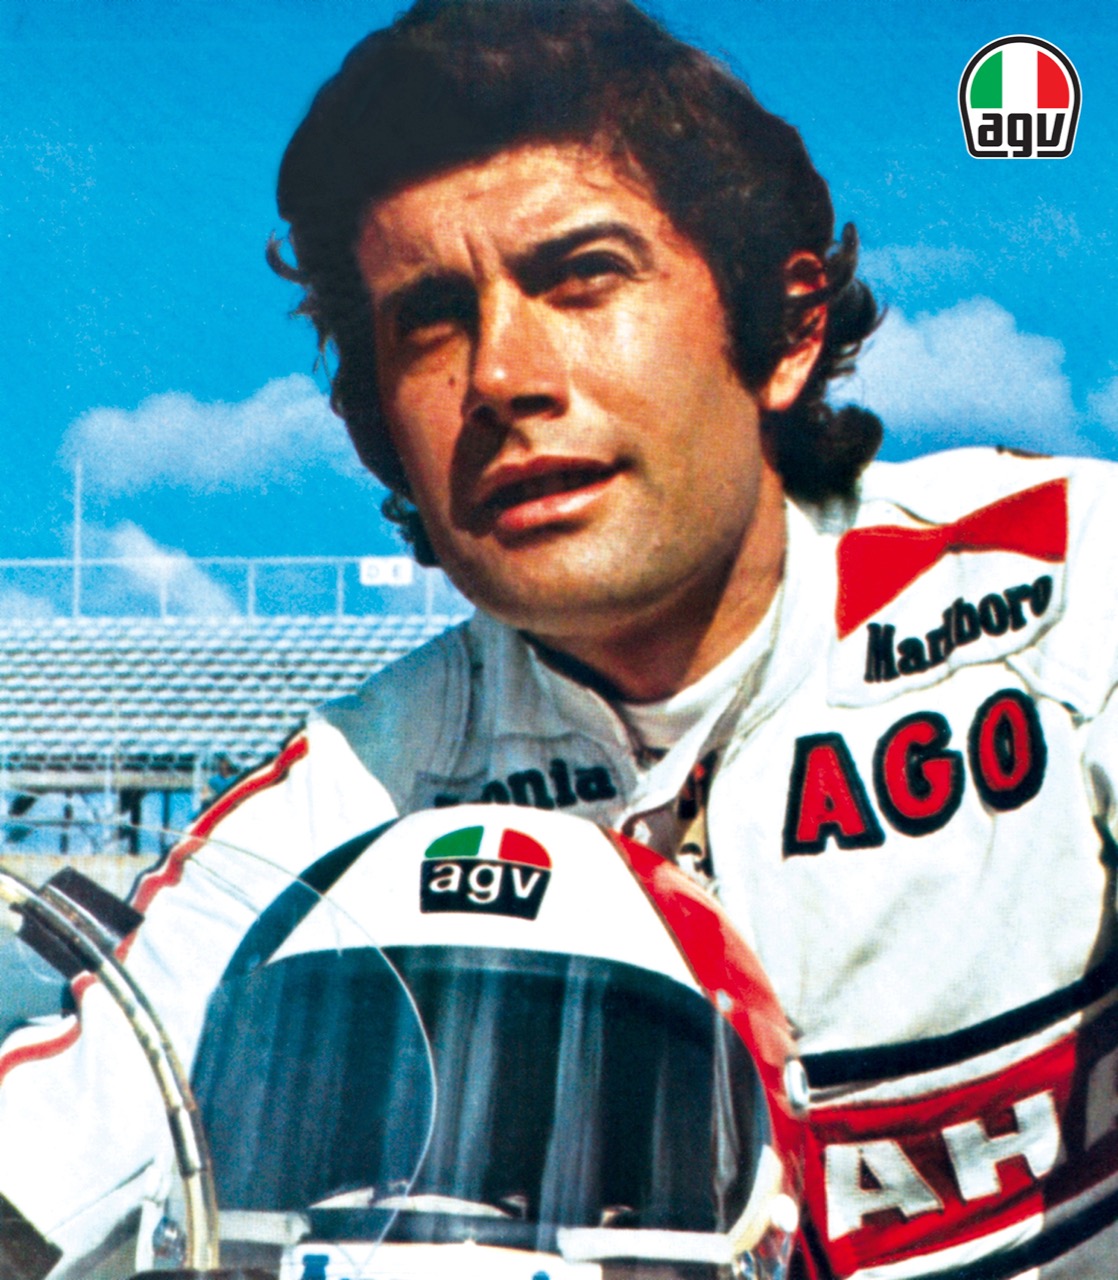 邁入70週年，agv在這次米蘭展的官方新聞資料中再次提及GP傳奇Giacomo Agostini與agv的關係。